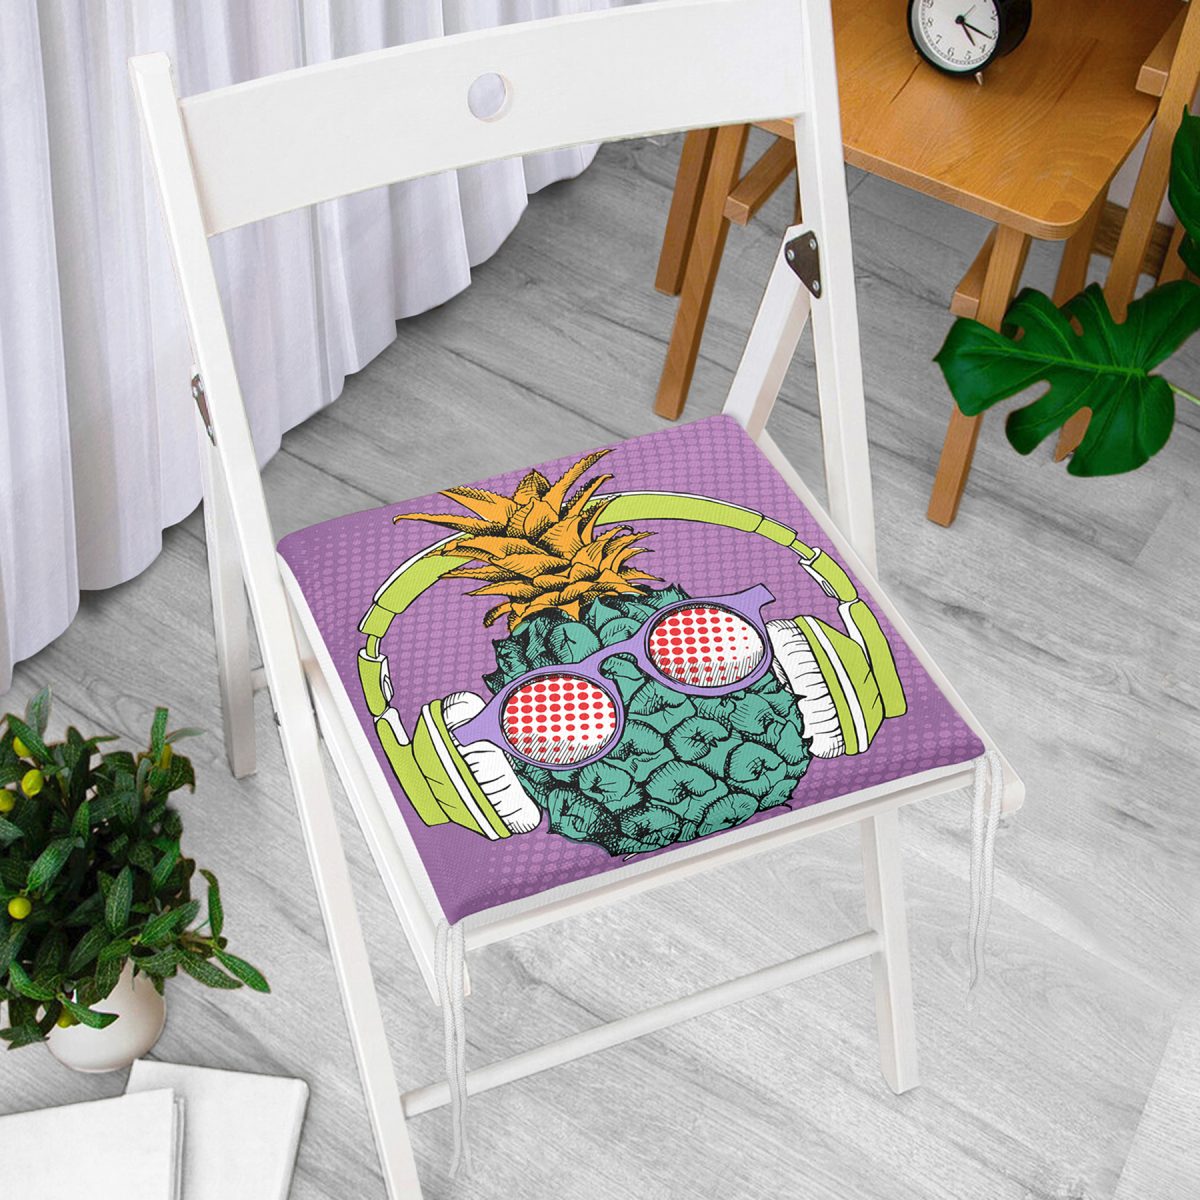 Mor Zeminde Tropikal Ananas Desenli Dijital Baskılı Fermuarlı Sandalye Minderi Realhomes